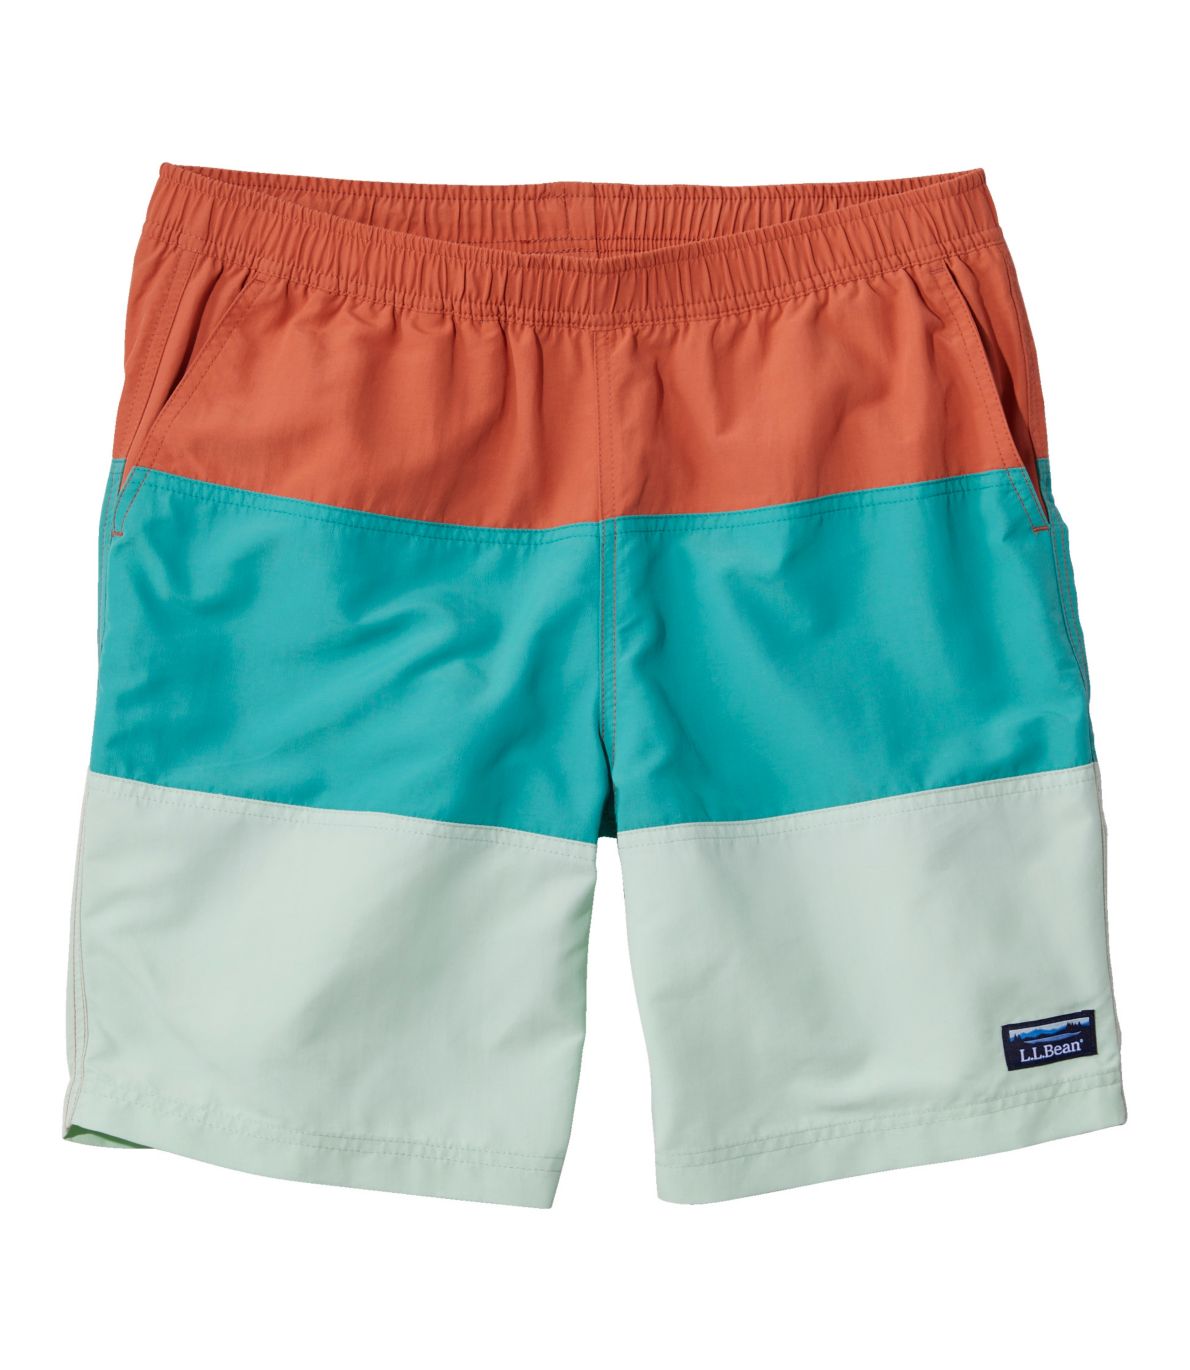 Men's Classic Supplex Sport Shorts, Colorblock, 8"